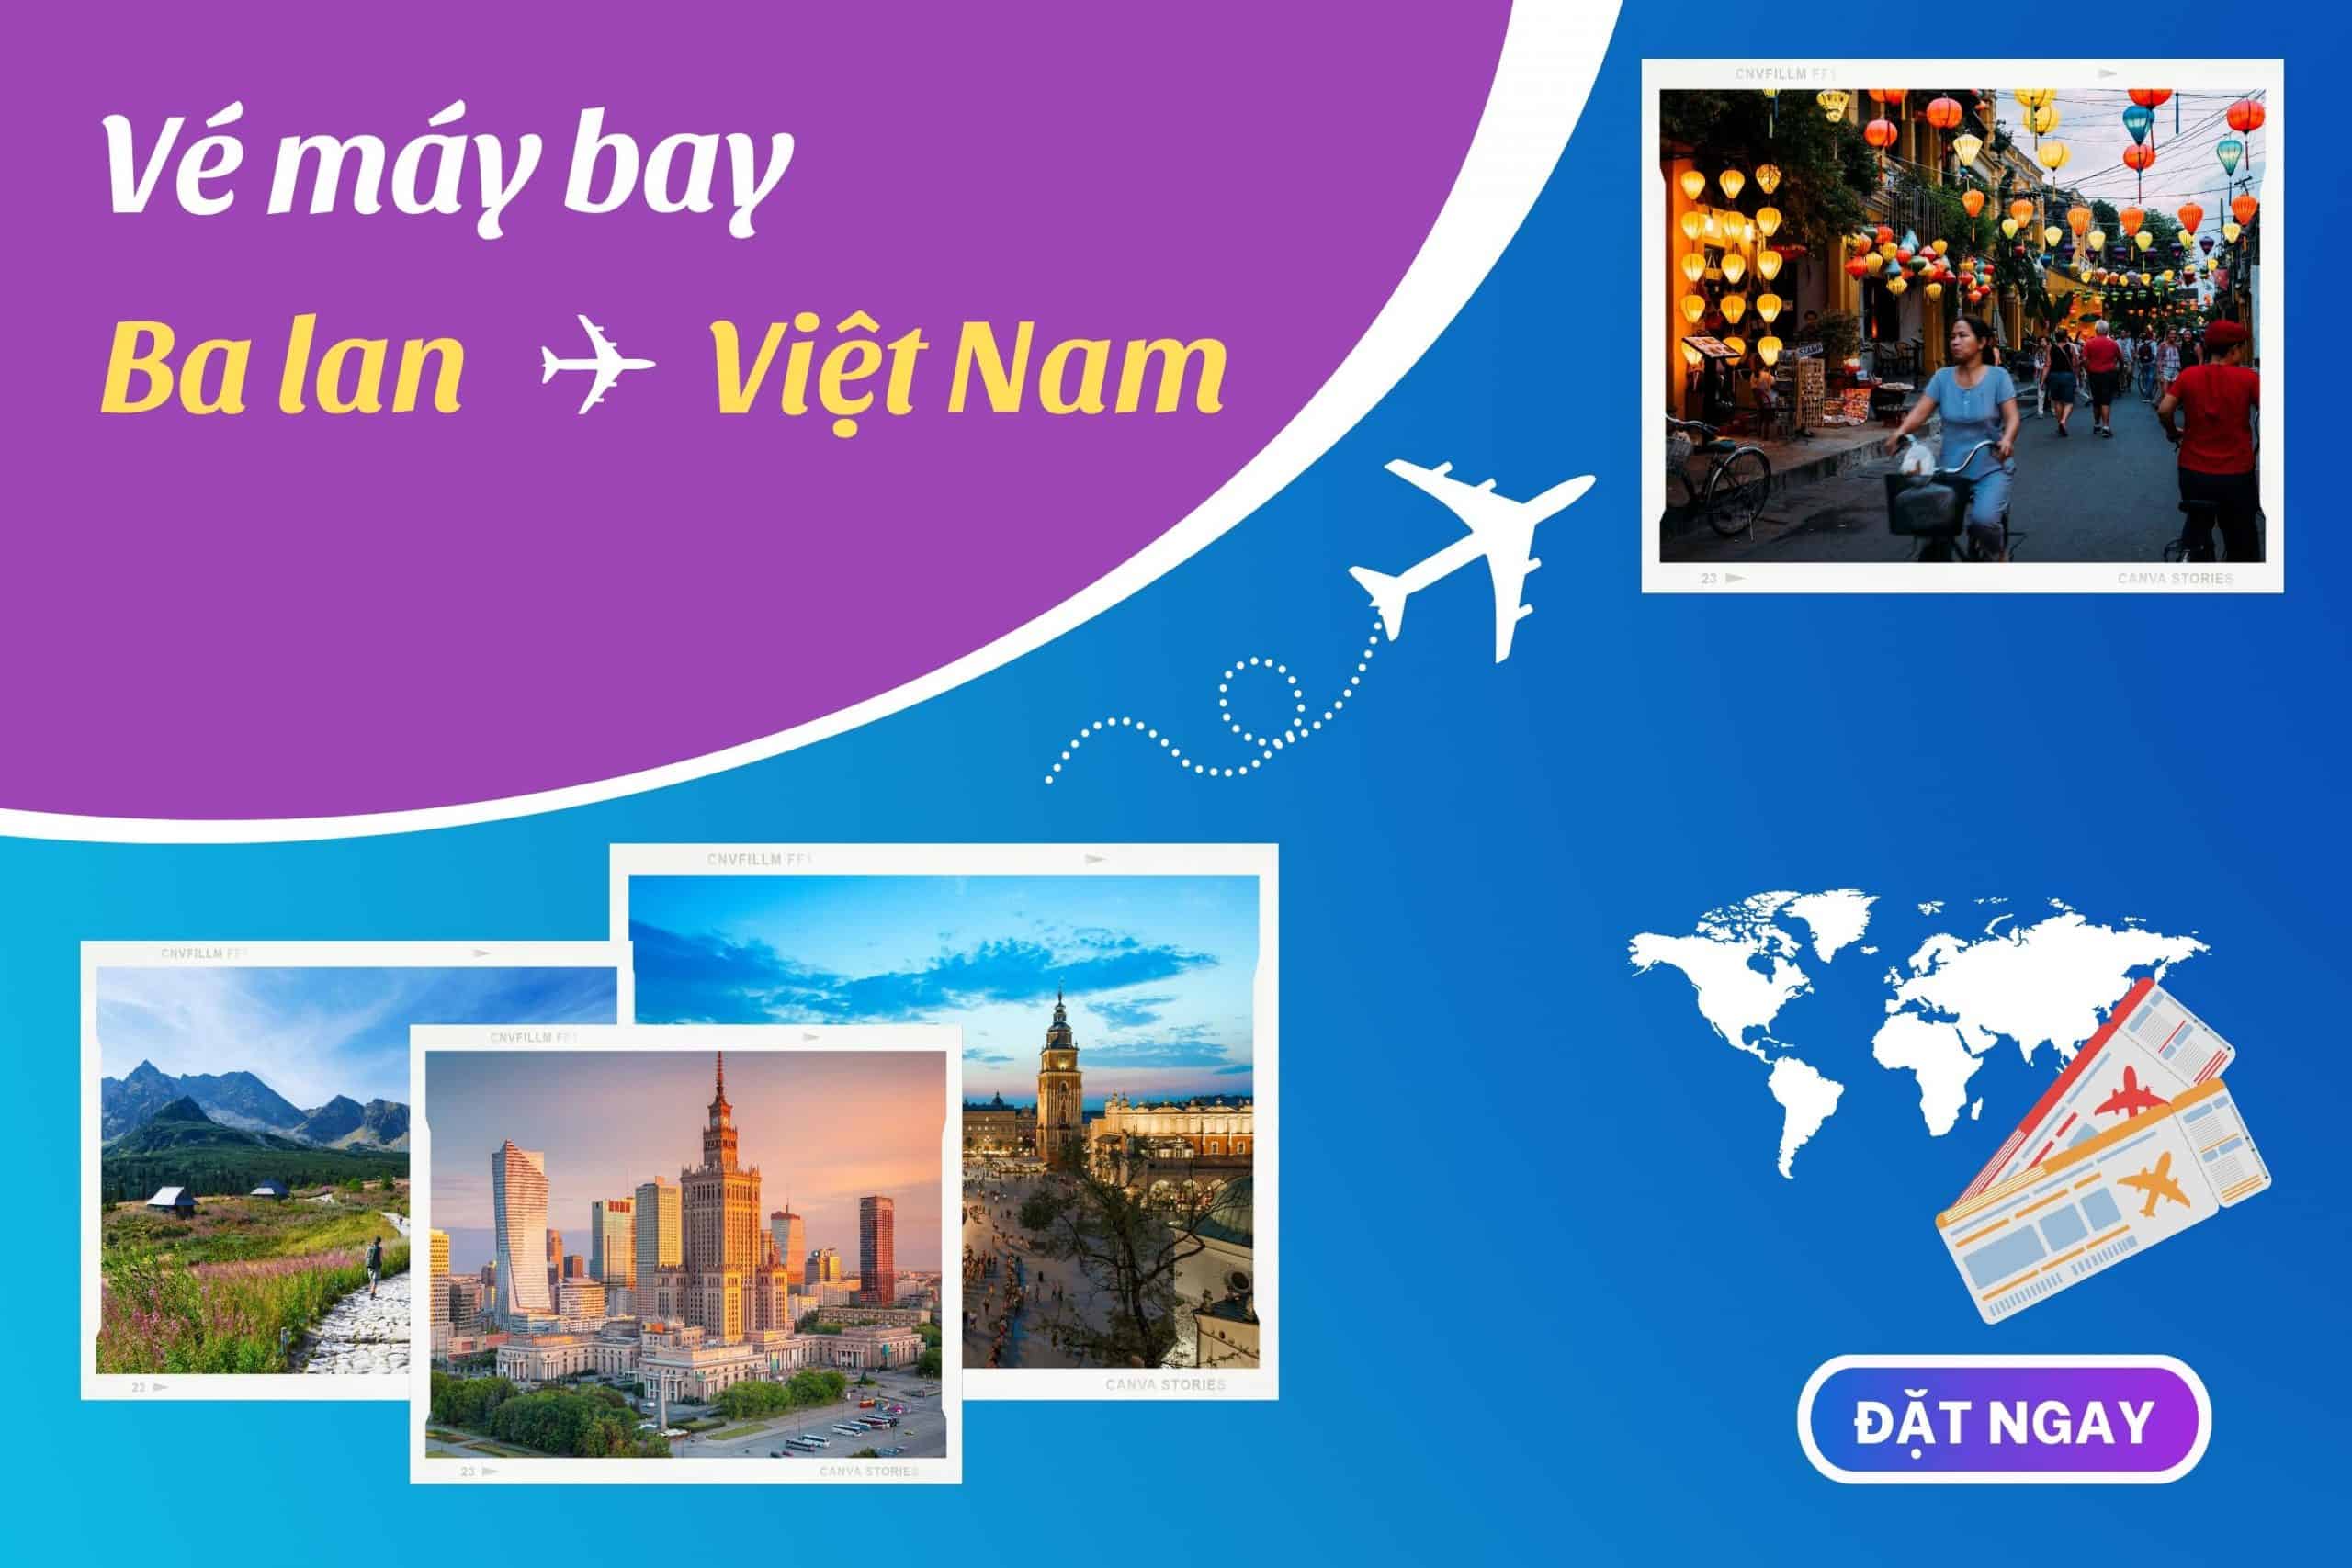 Vé máy bay từ Ba Lan về Việt Nam